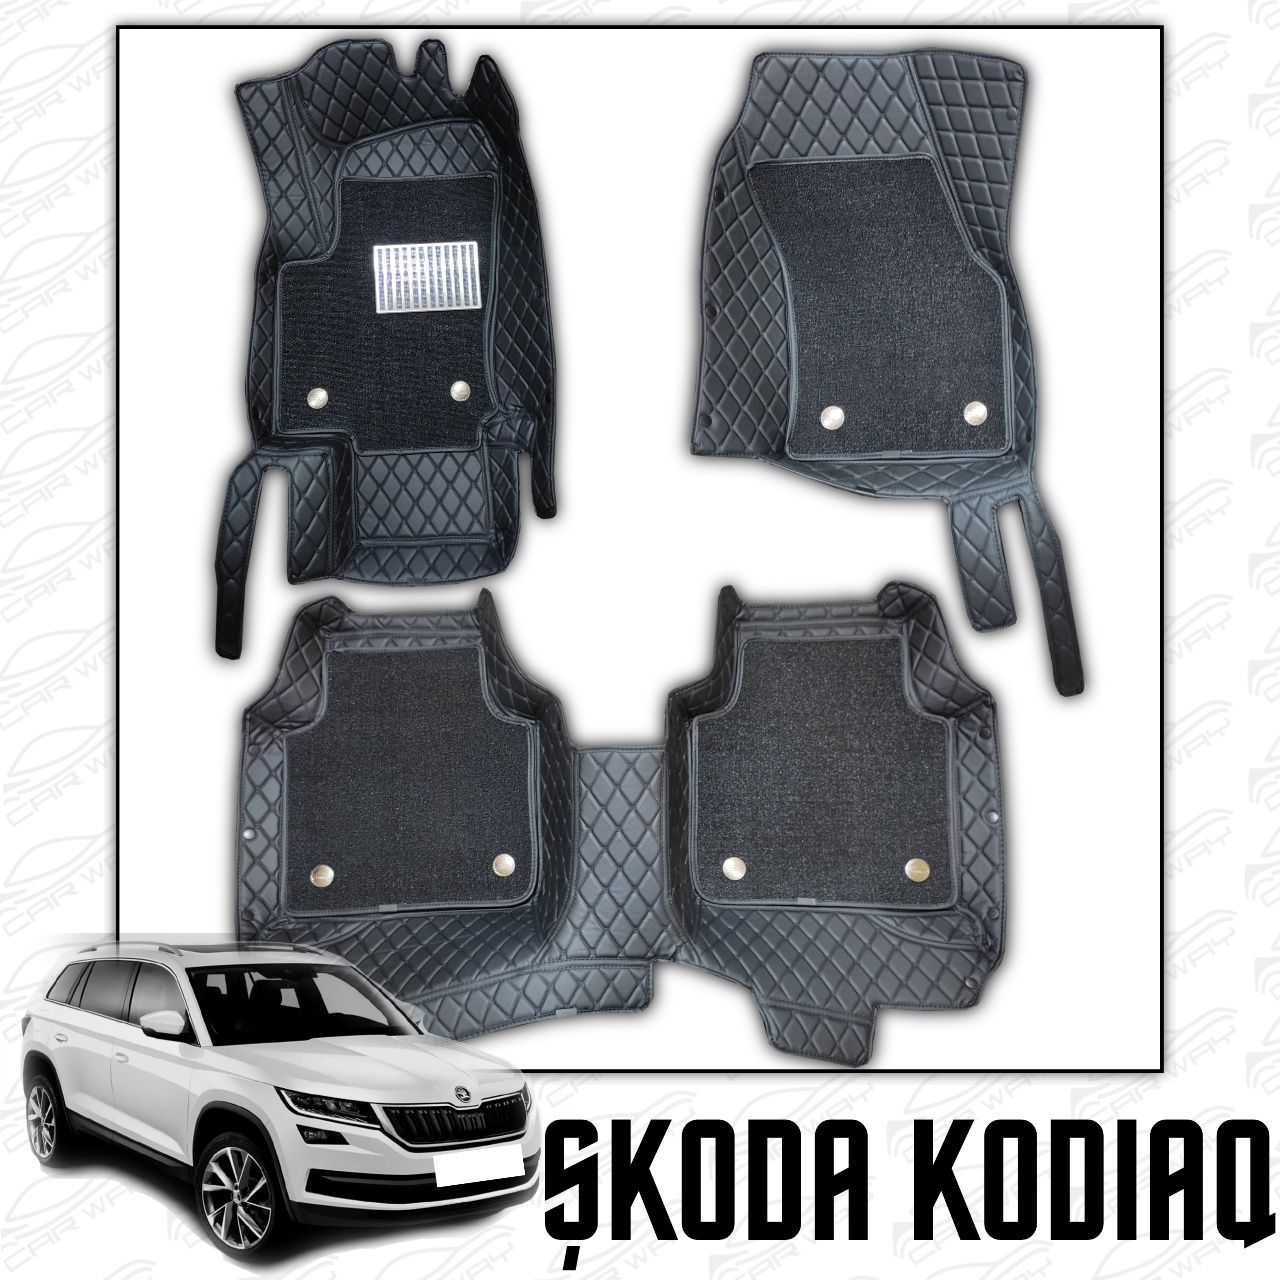 9D polik / коврики для Skoda Kodiaq